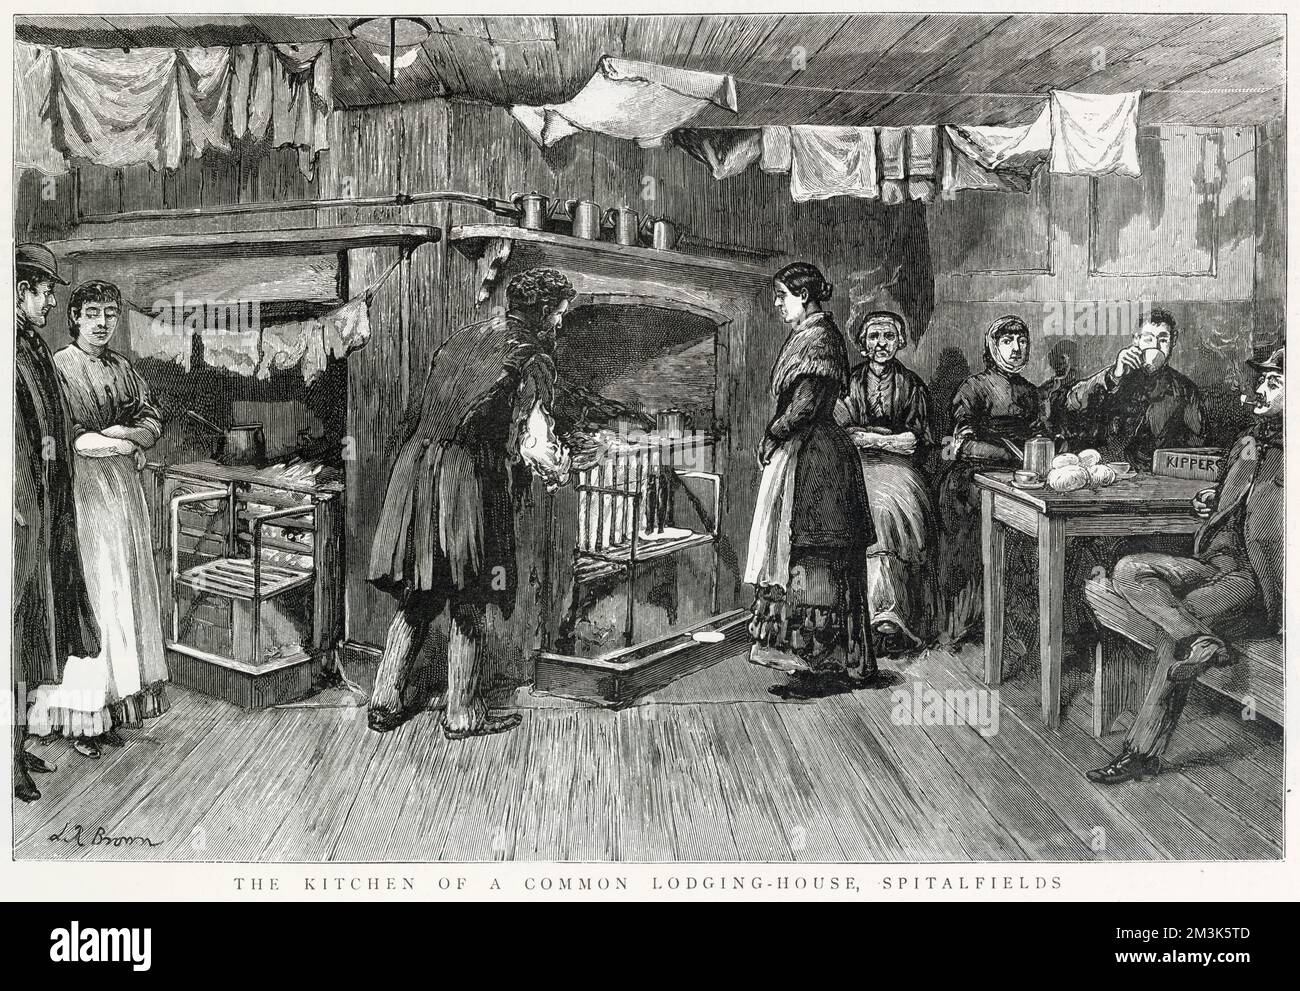 Die Küche eines Wohnhauses, Spitalfields, London. Männer und Frauen sitzen zusammen unter der Wäsche und hängen zum Trocknen raus. Diese Szene wurde aus dem Leben gezeichnet. Stockfoto